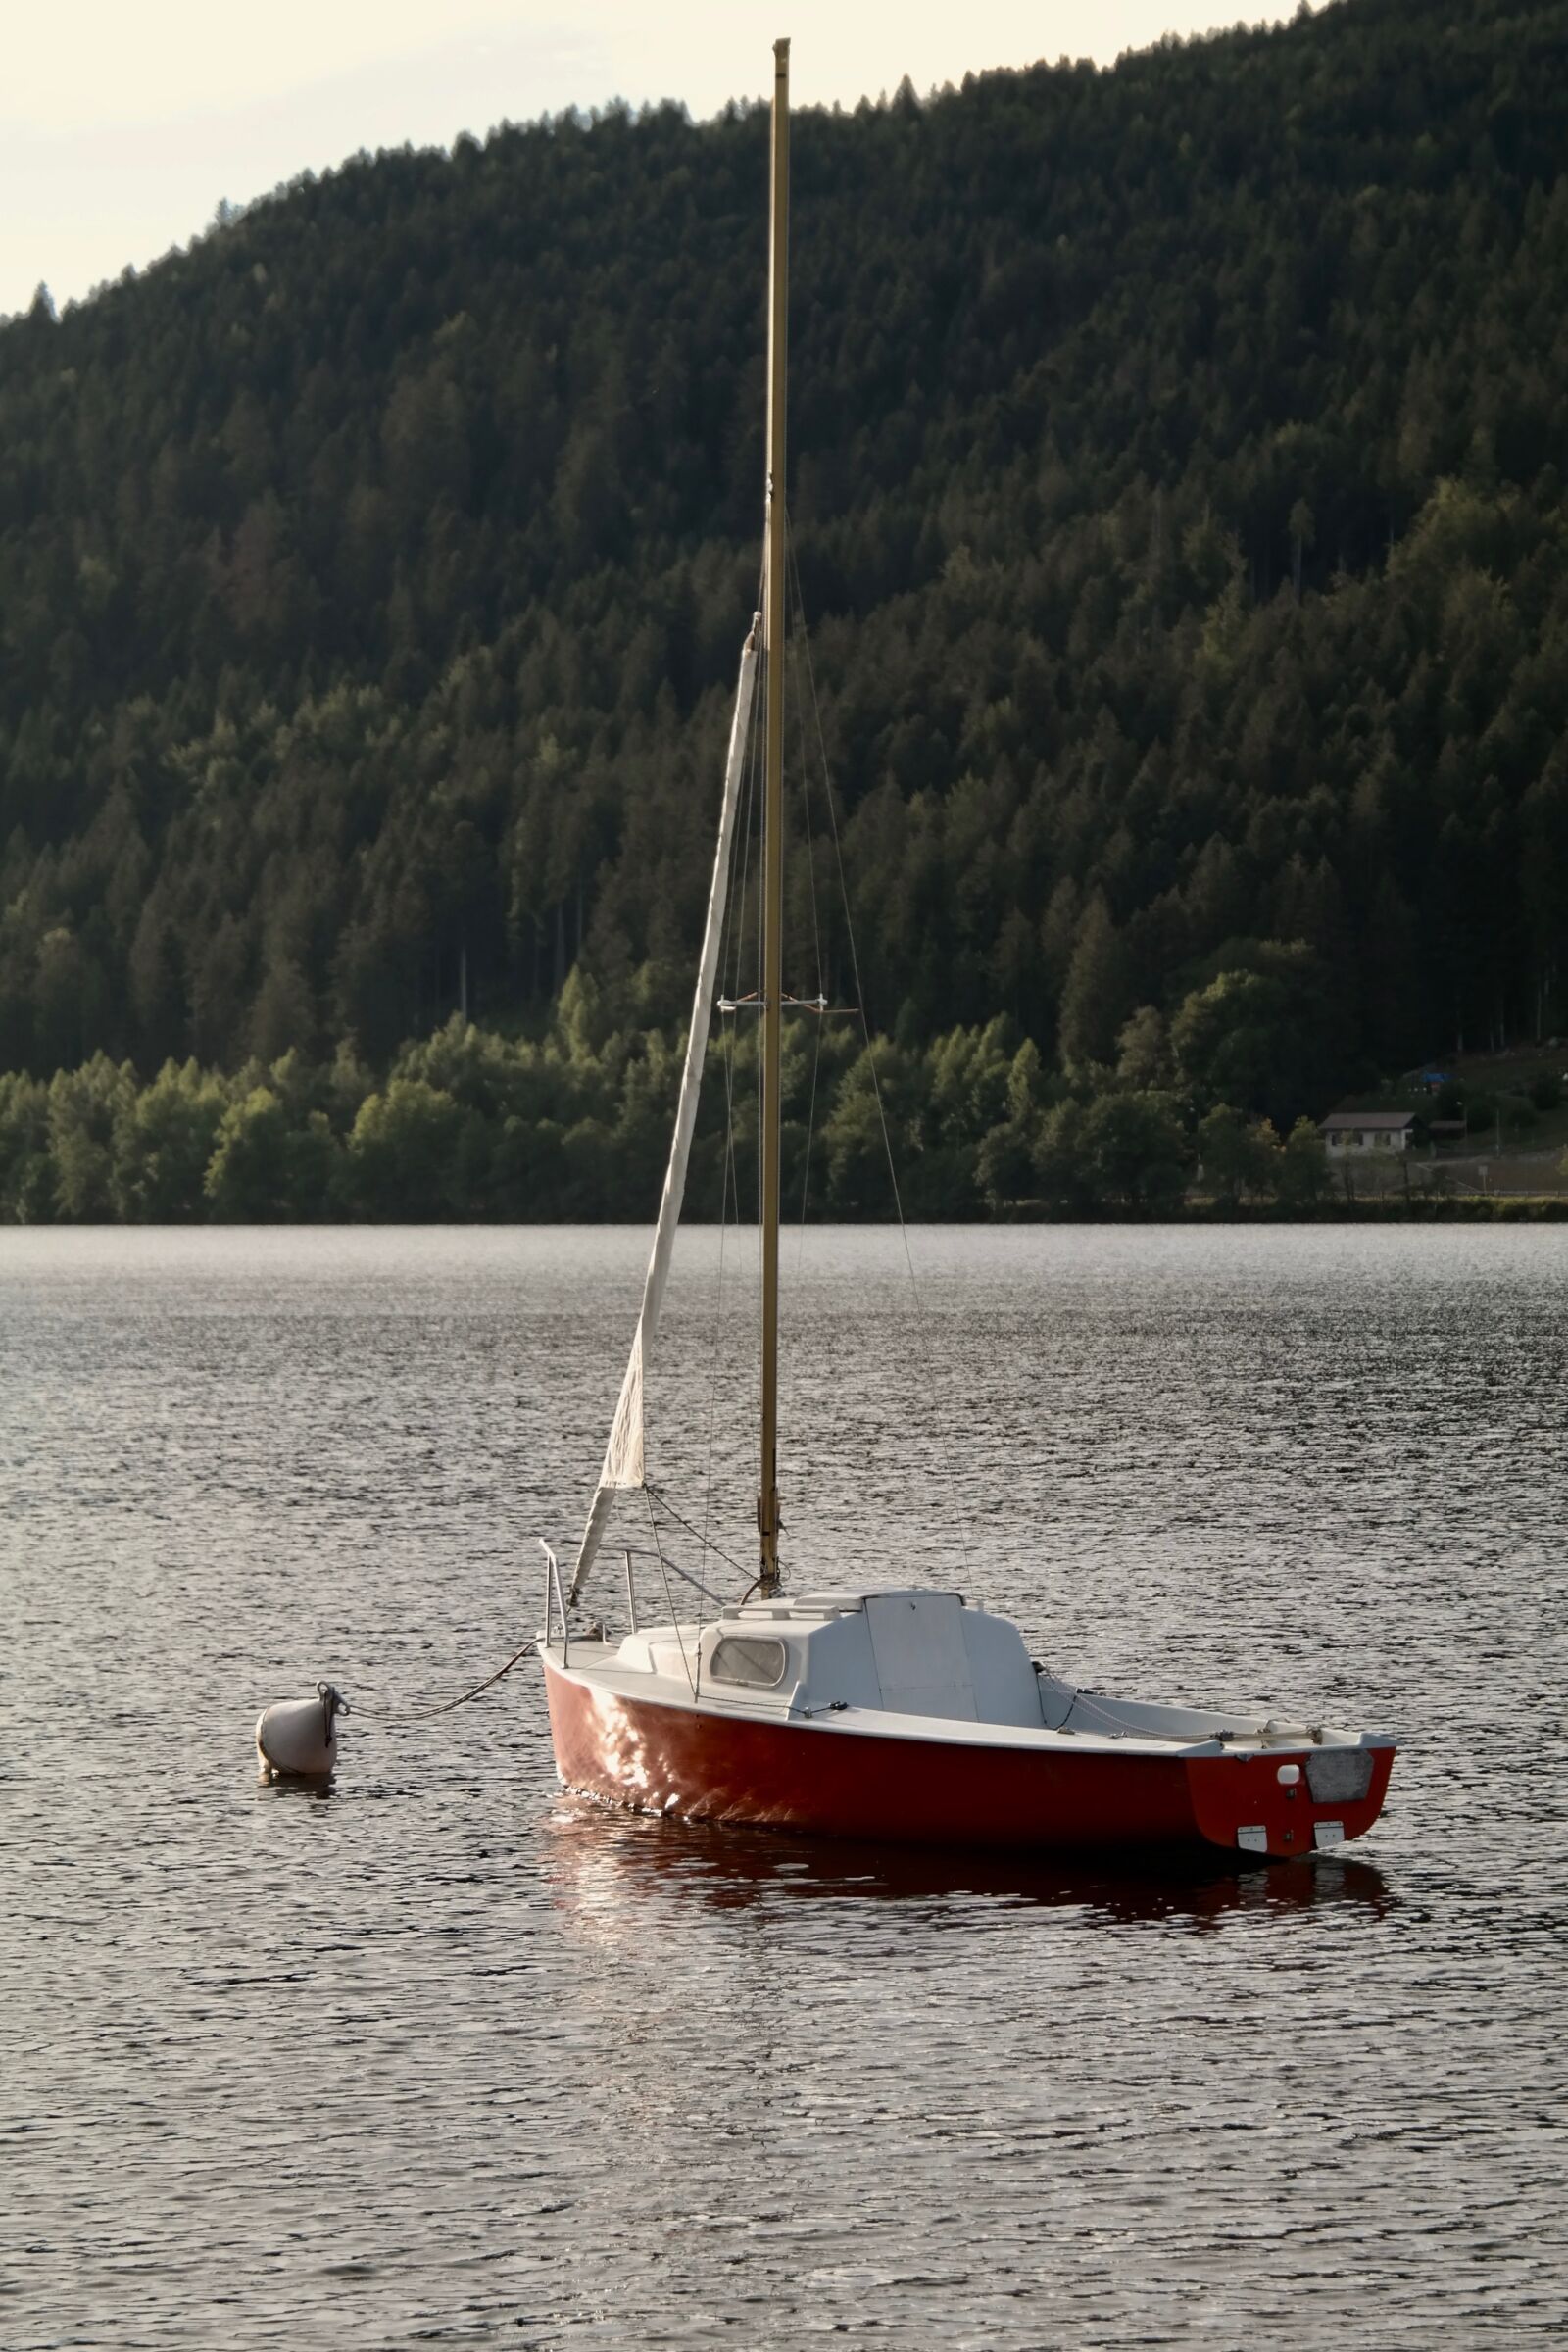 Samsung NX300 sample photo. Boat, sailing boat, lake photography